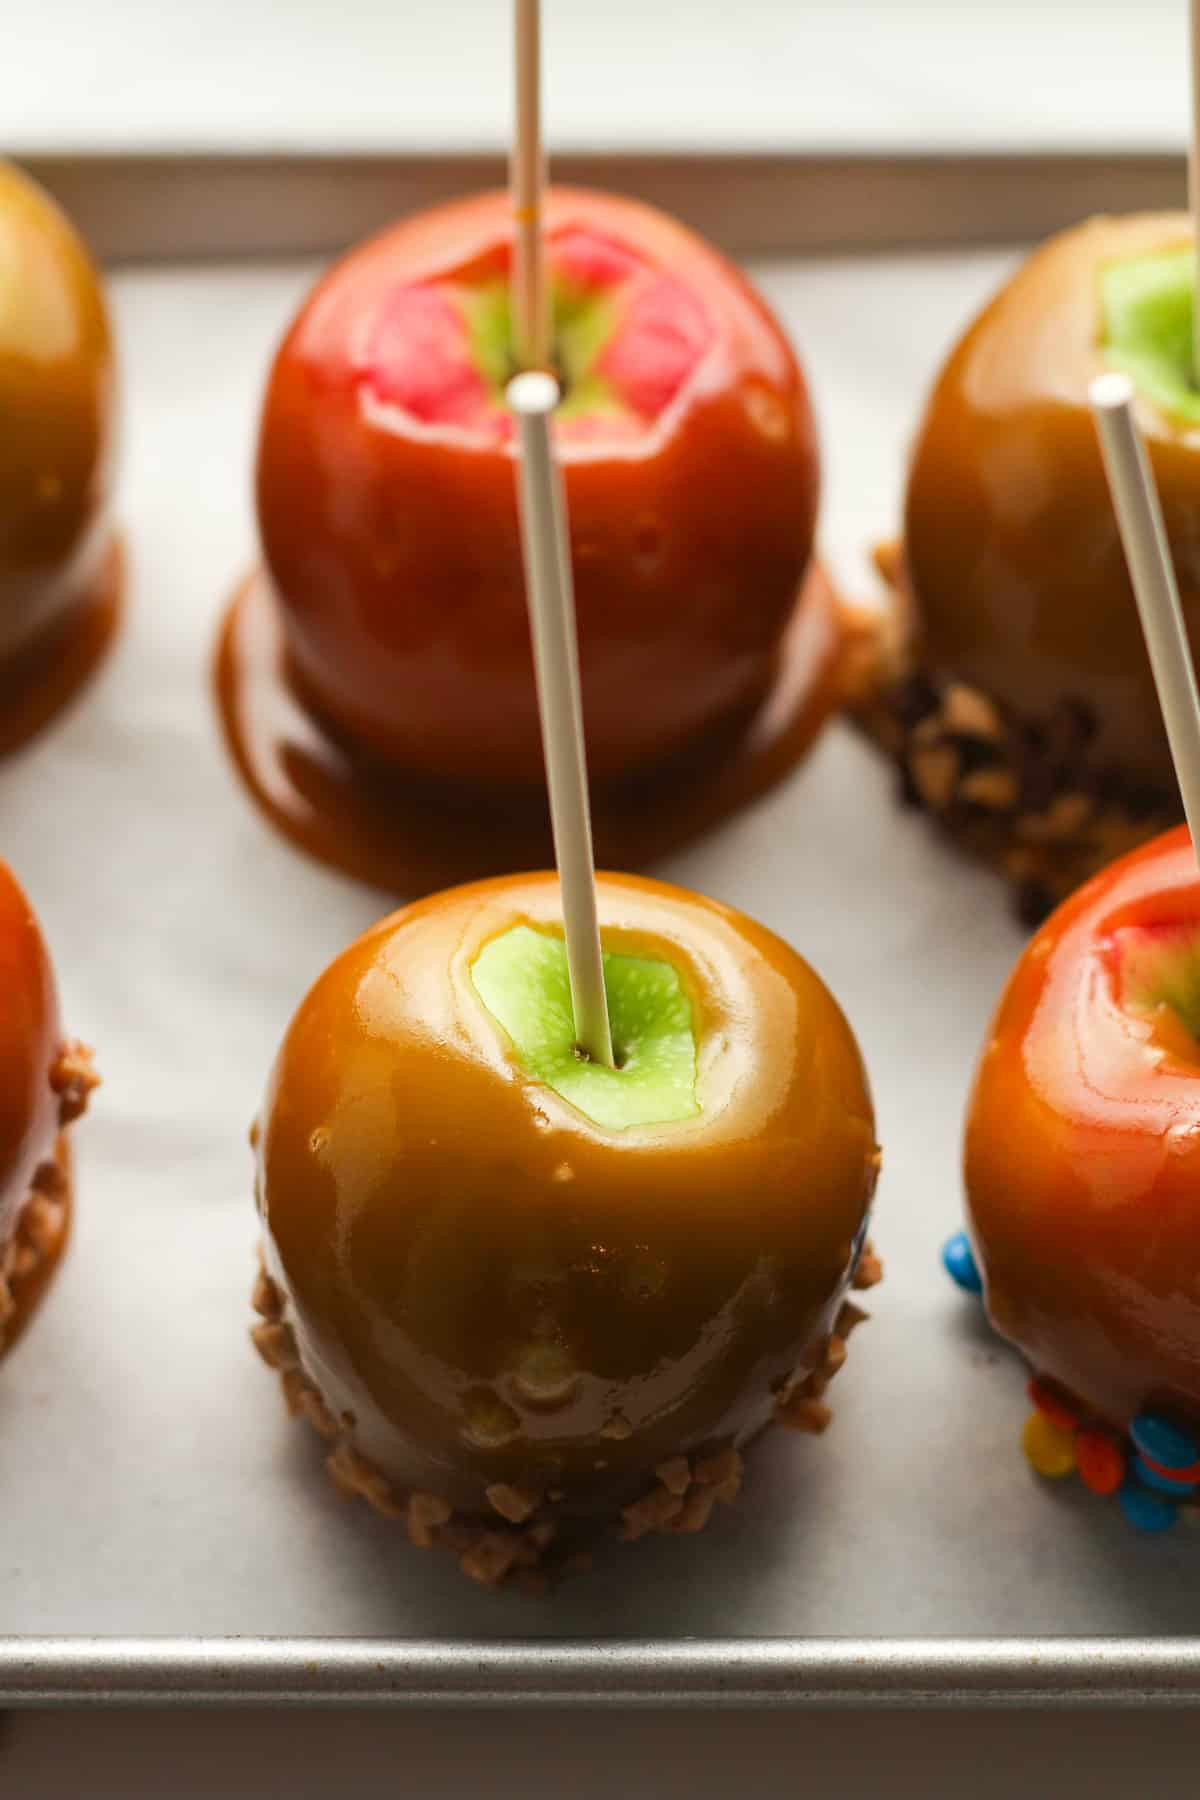 Side shot of caramel apples.